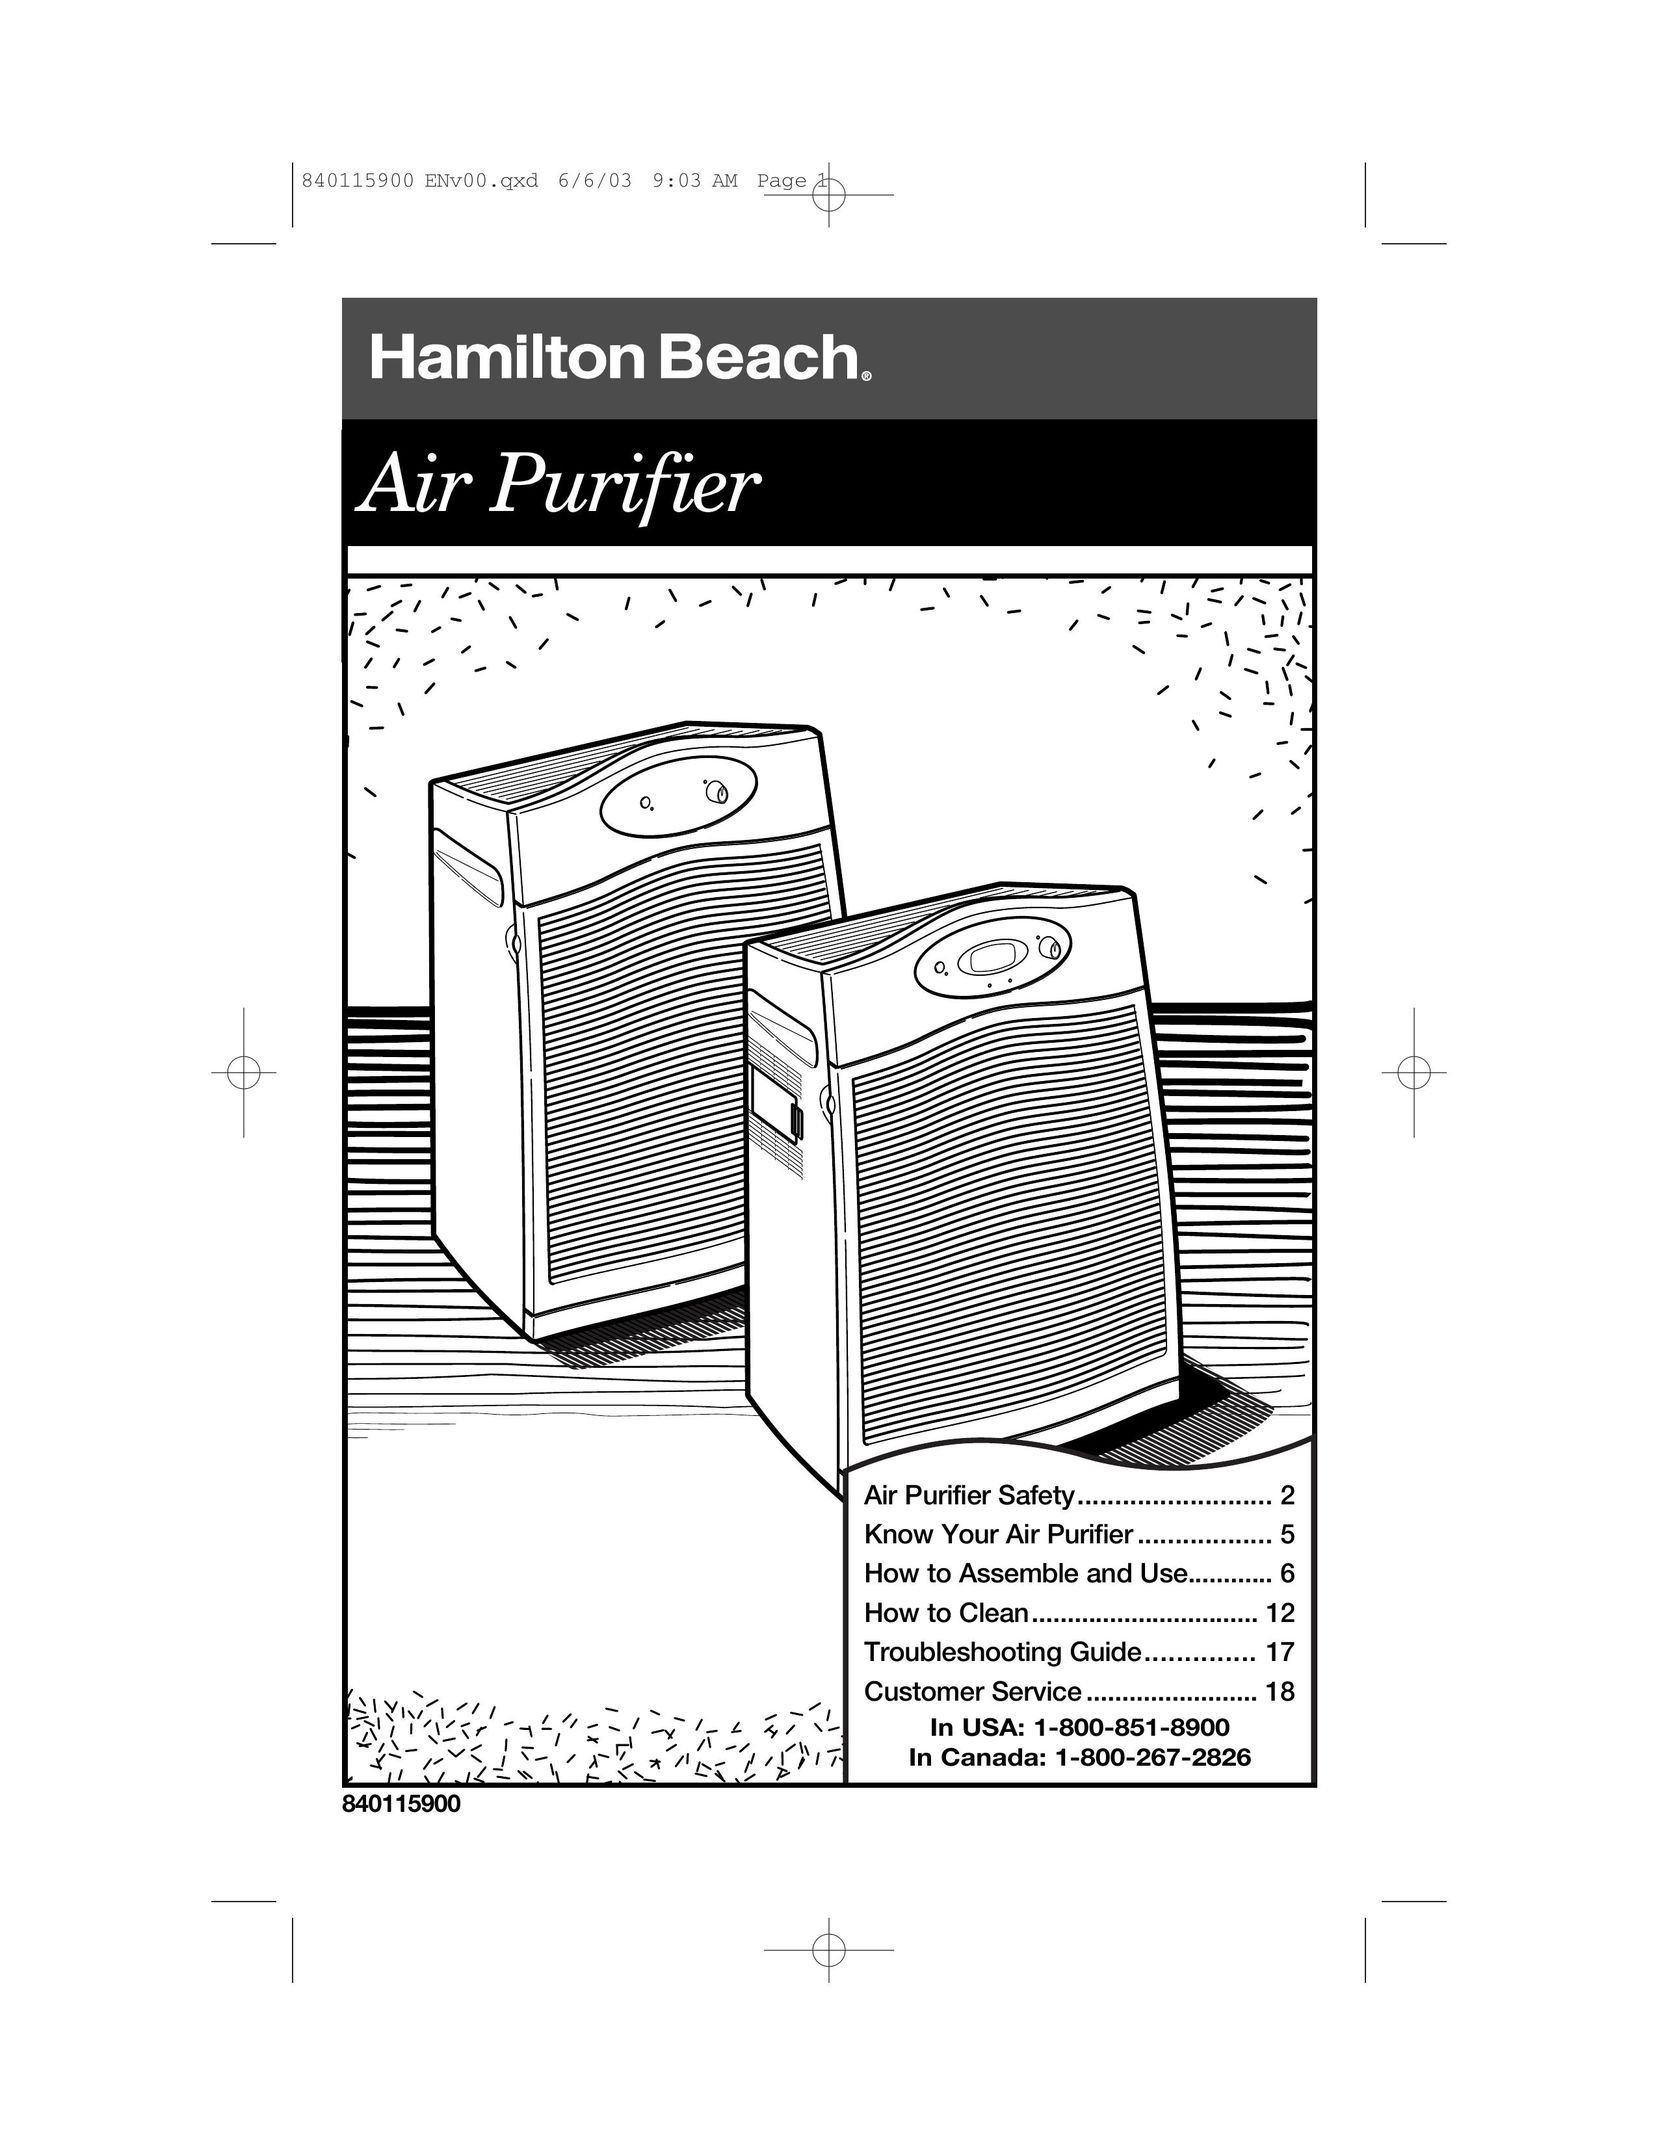 Hamilton Beach 840115900 Air Cleaner User Manual